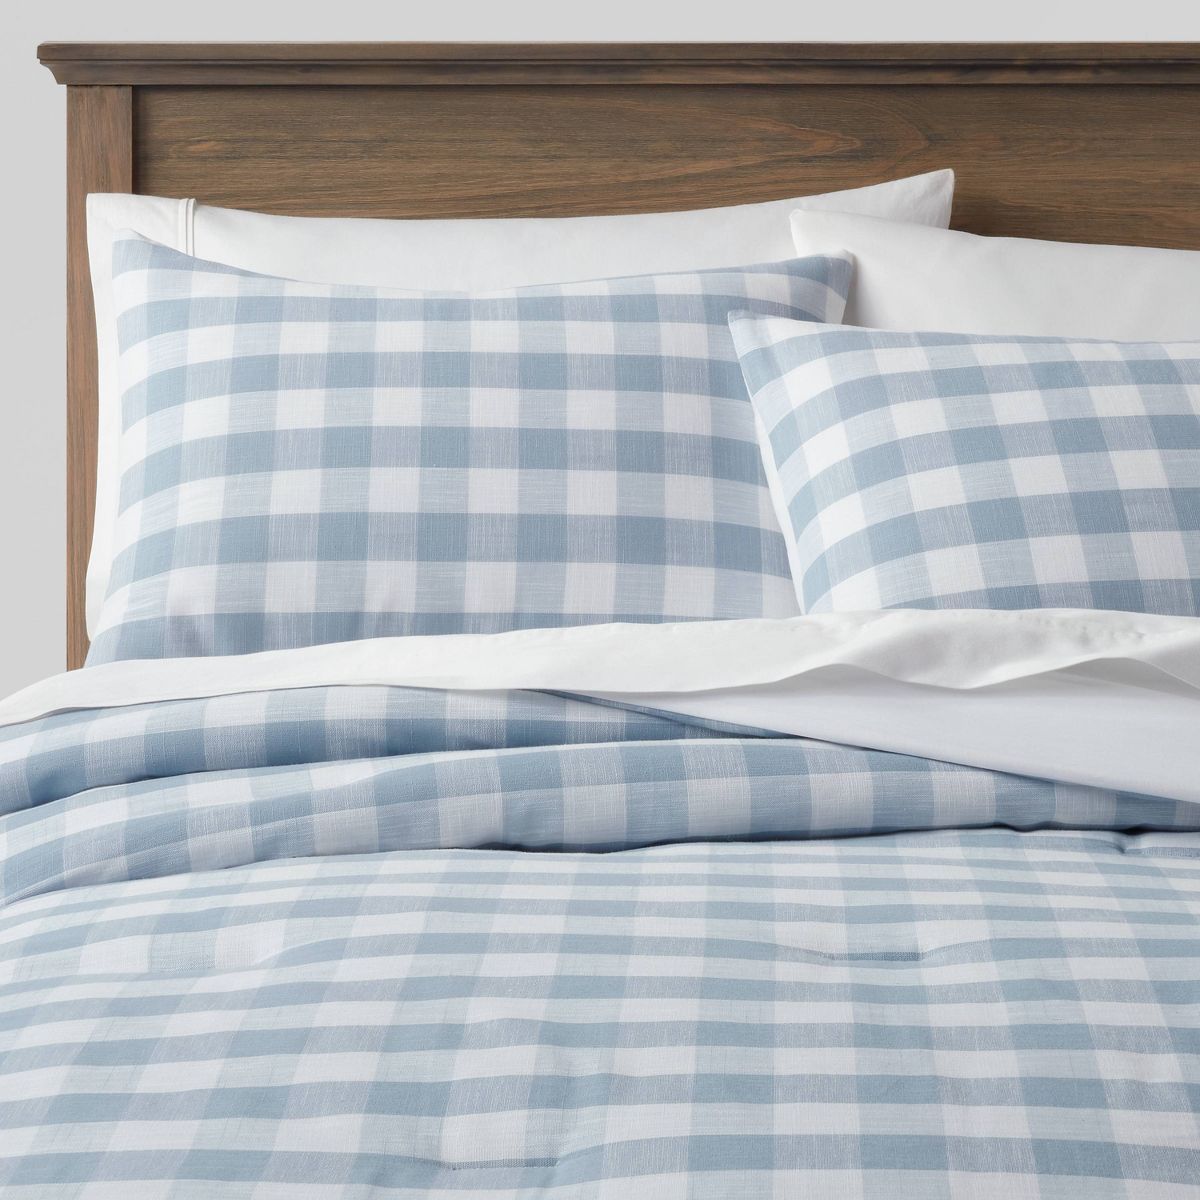 Full/Queen Yarn-Dyed Gingham Comforter & Sham Set Light Blue - Threshold™ | Target